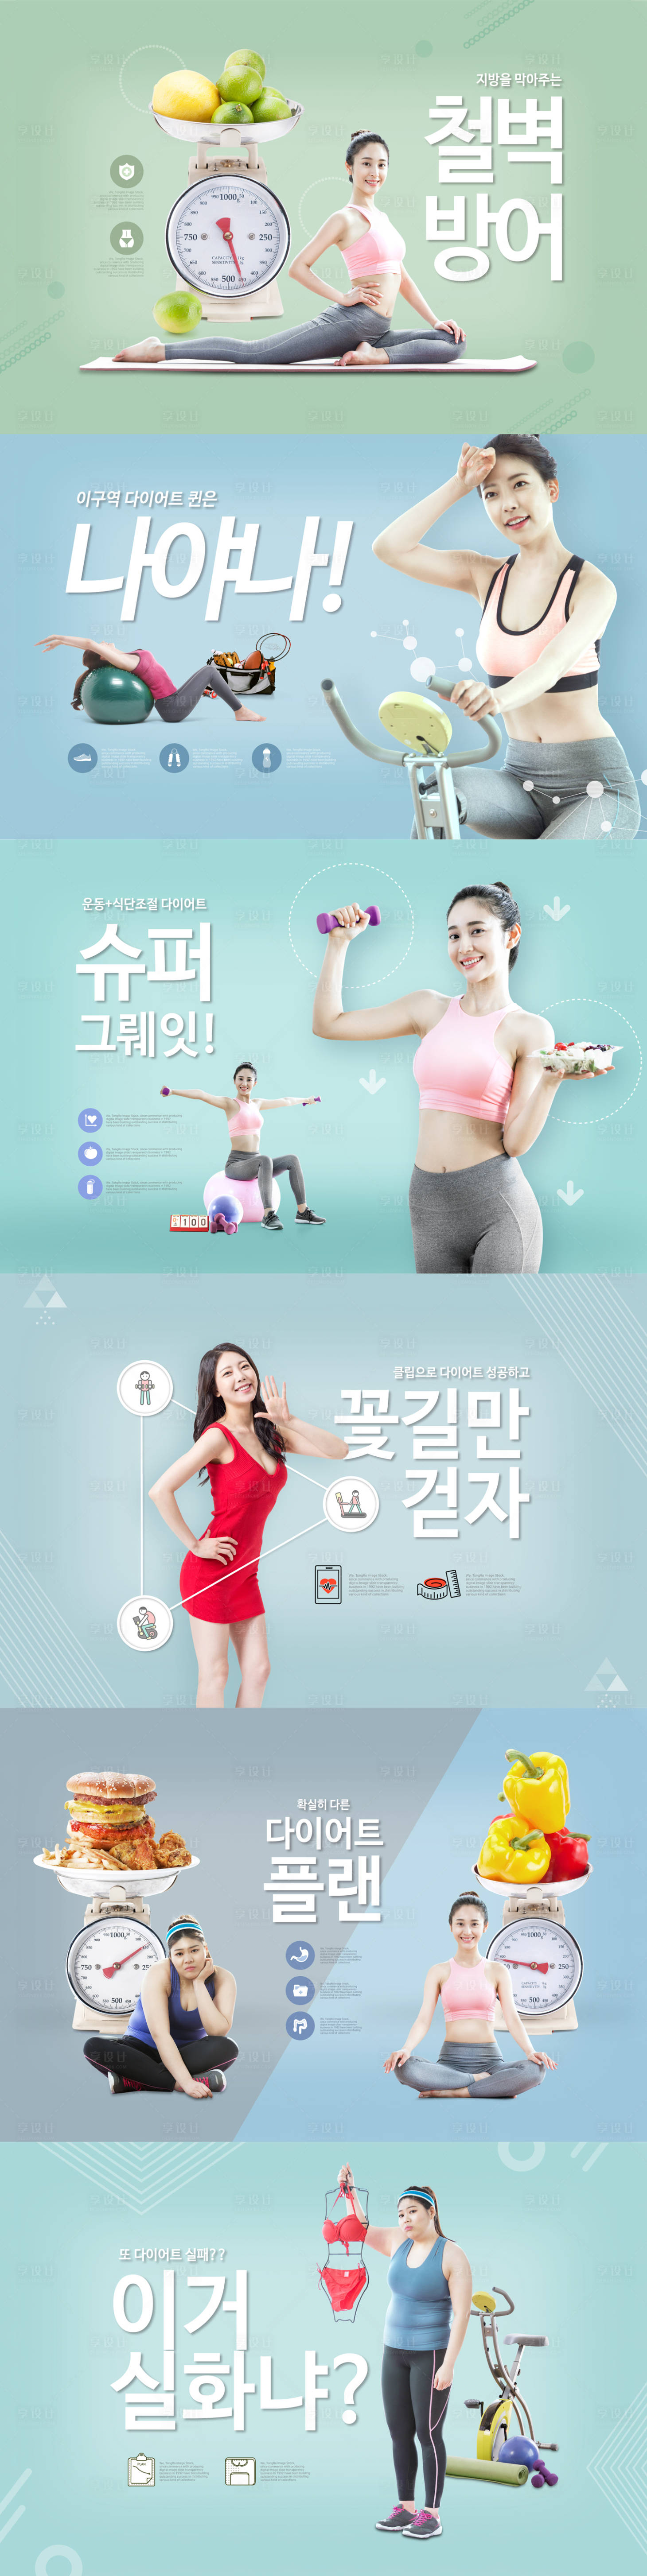 韩国健身减肥人物广告展板1